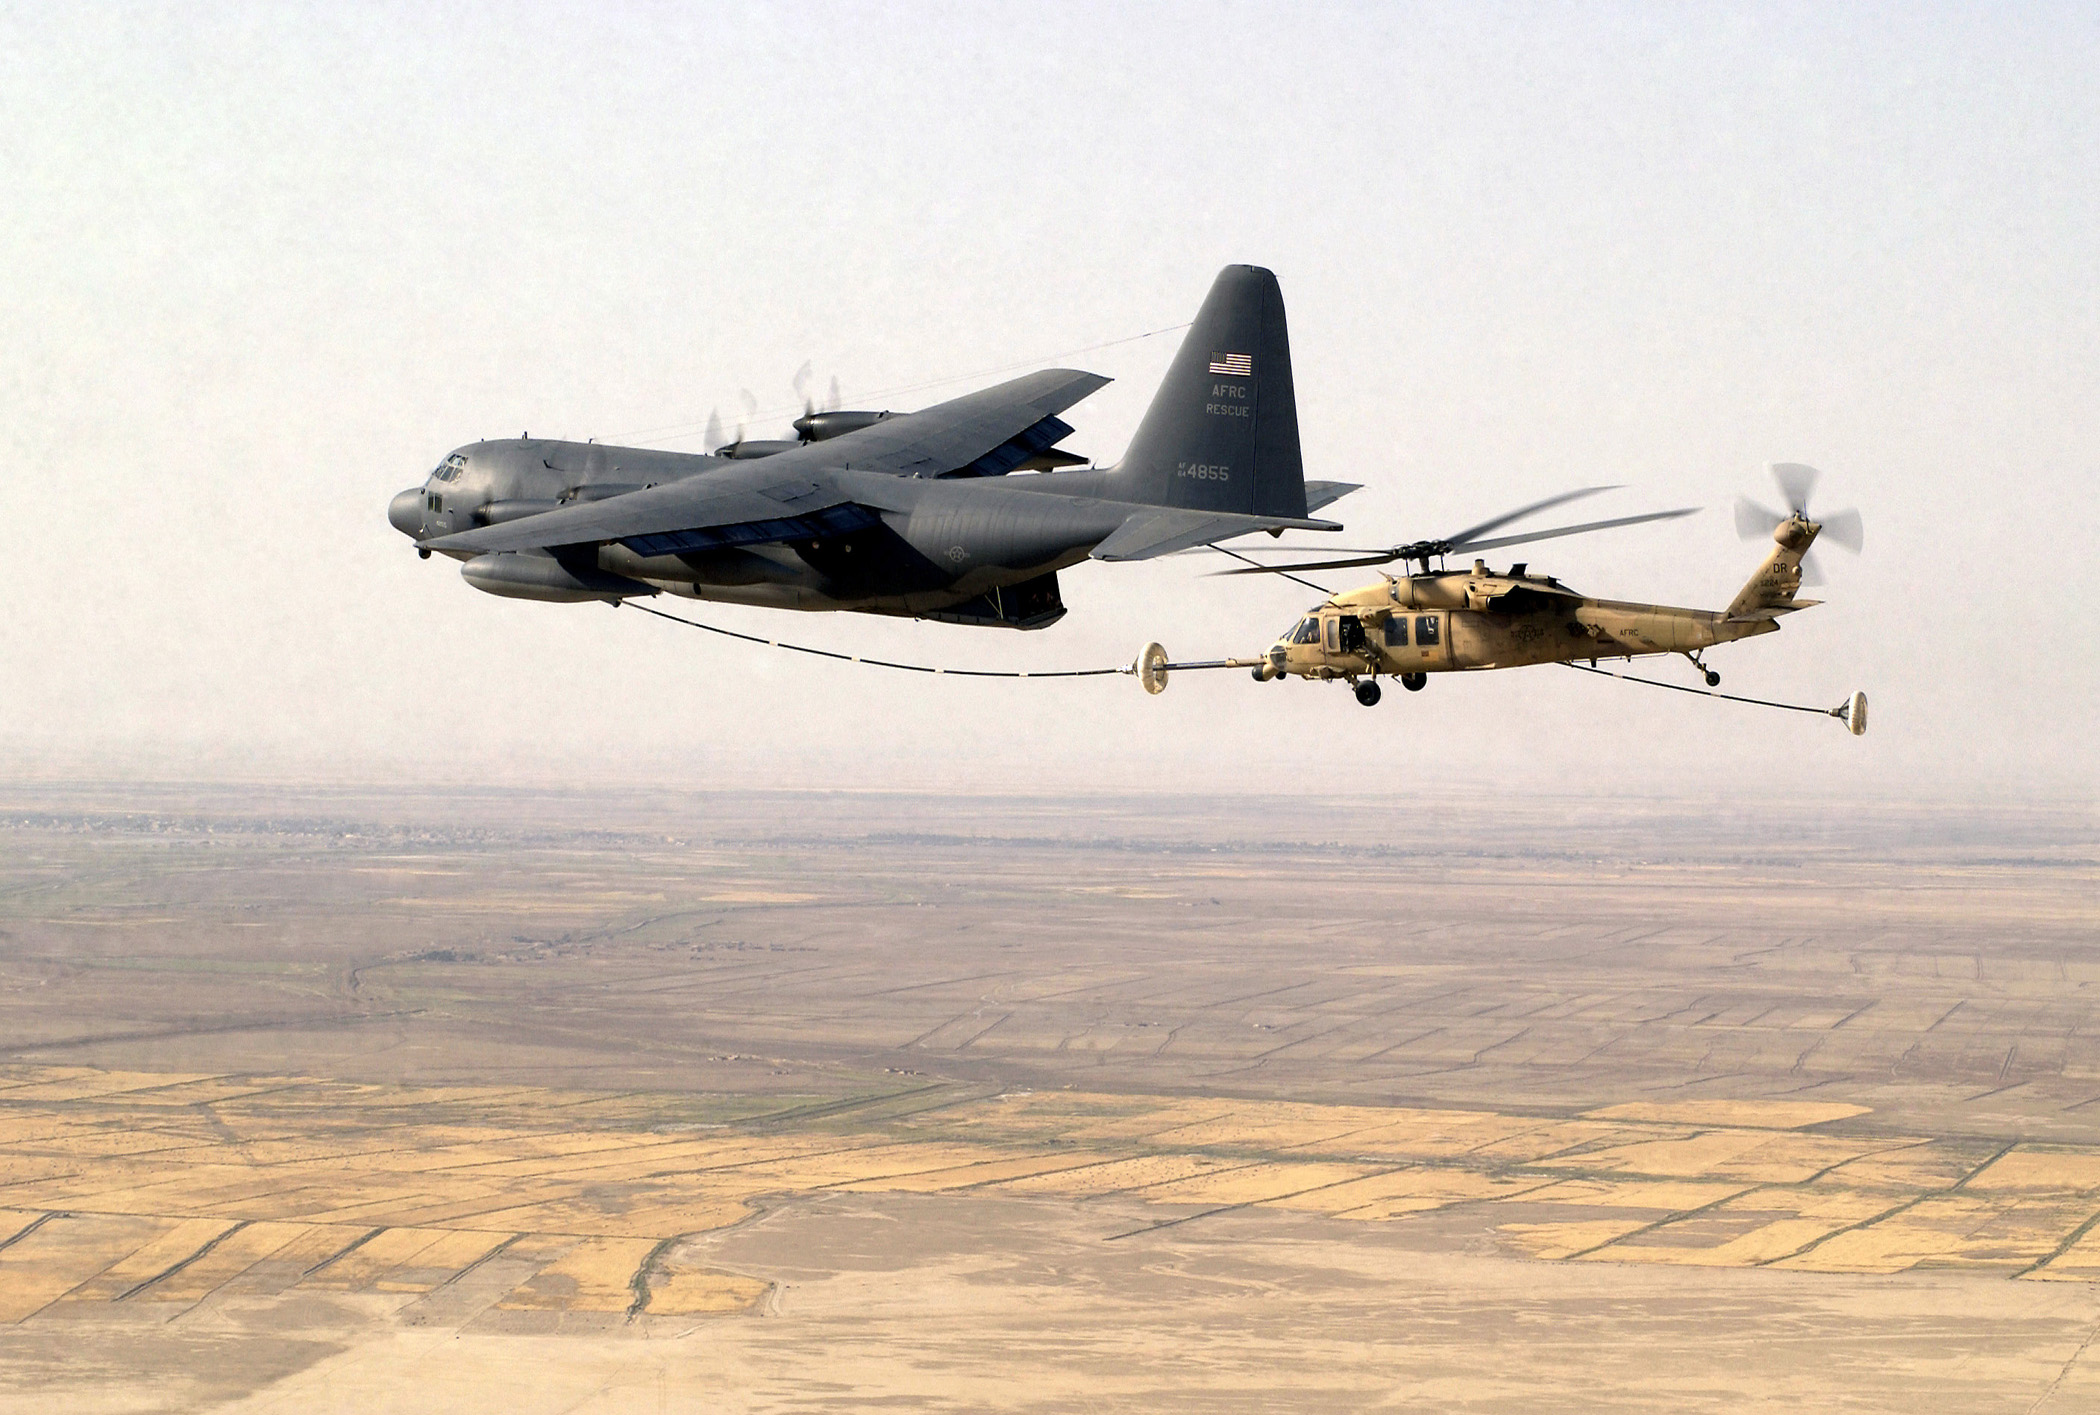 самолет, военный, вертолеты, транспортные средства, заправка, UH - 60 Black Hawk, KC - 130 Hercules - обои на рабочий стол